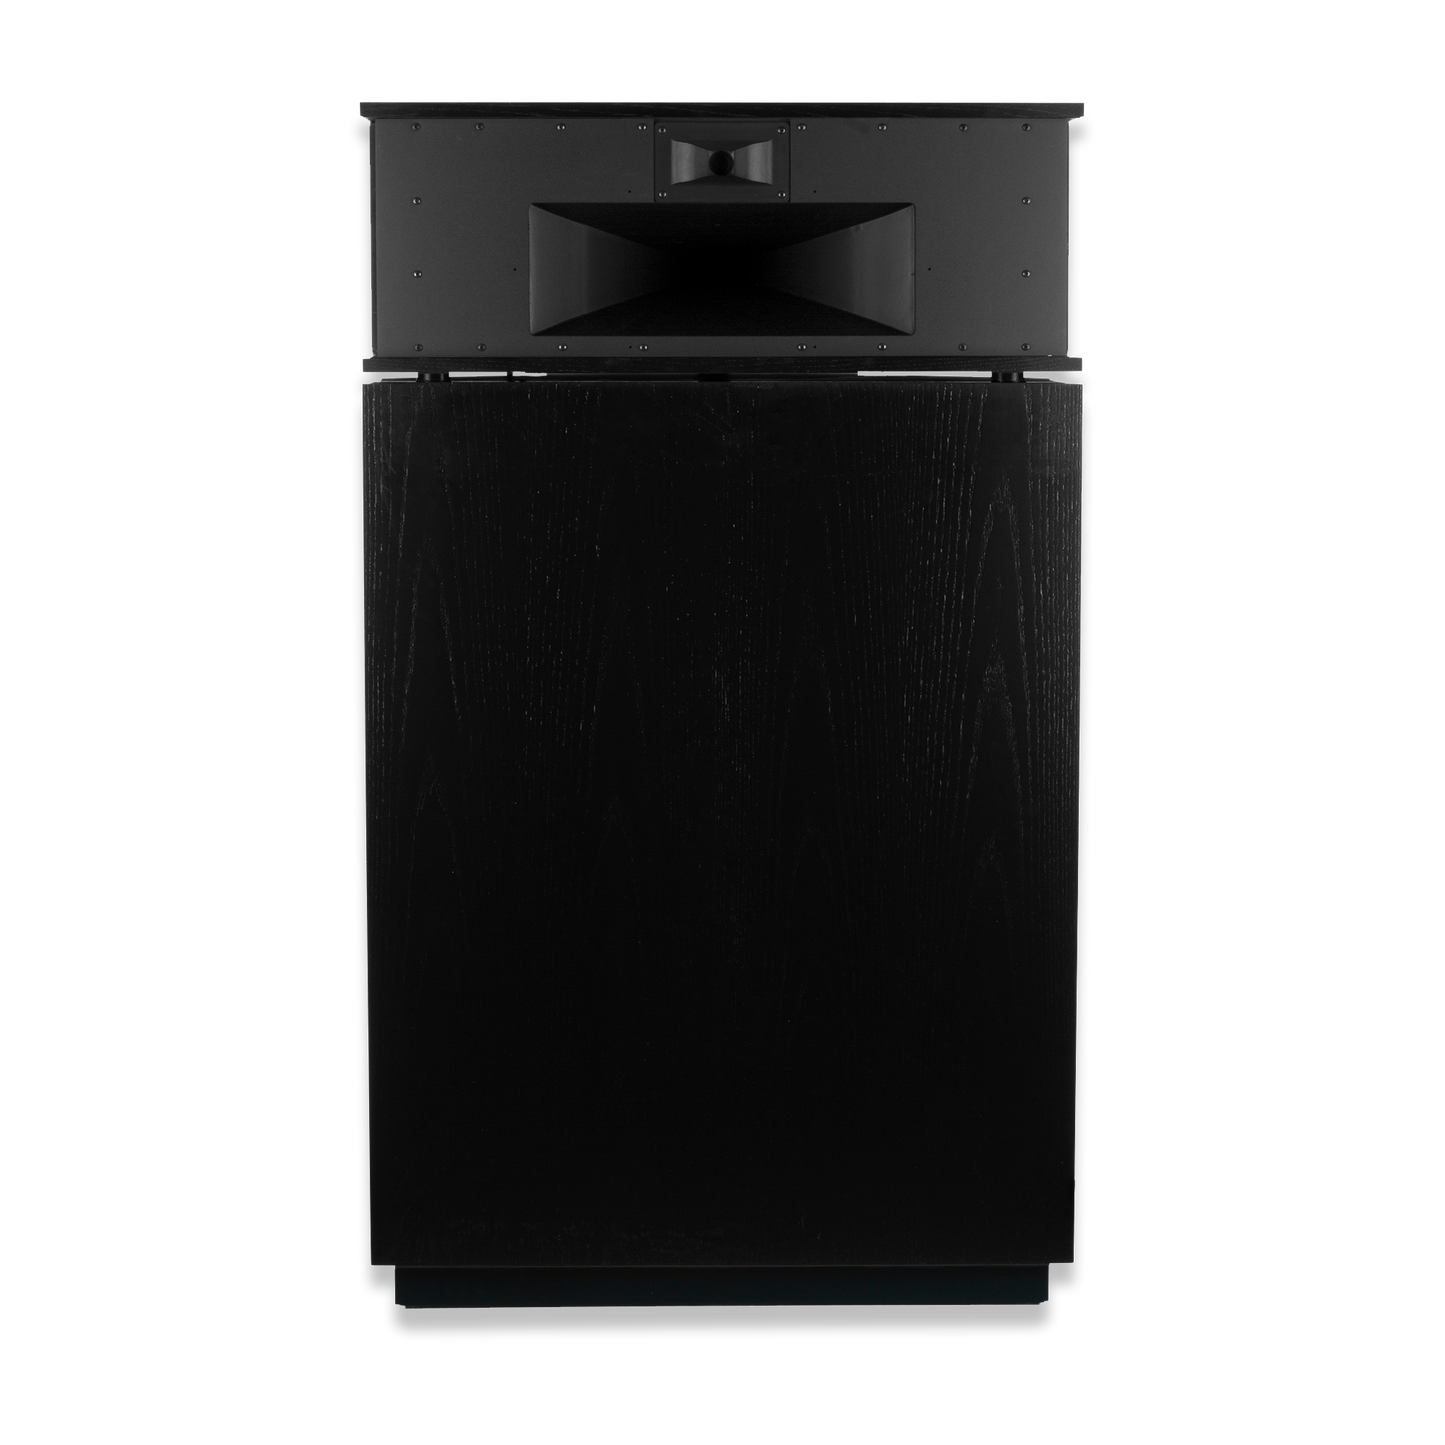 Klipsch Khorn AK6 Speakers in Satin Black. Rear image